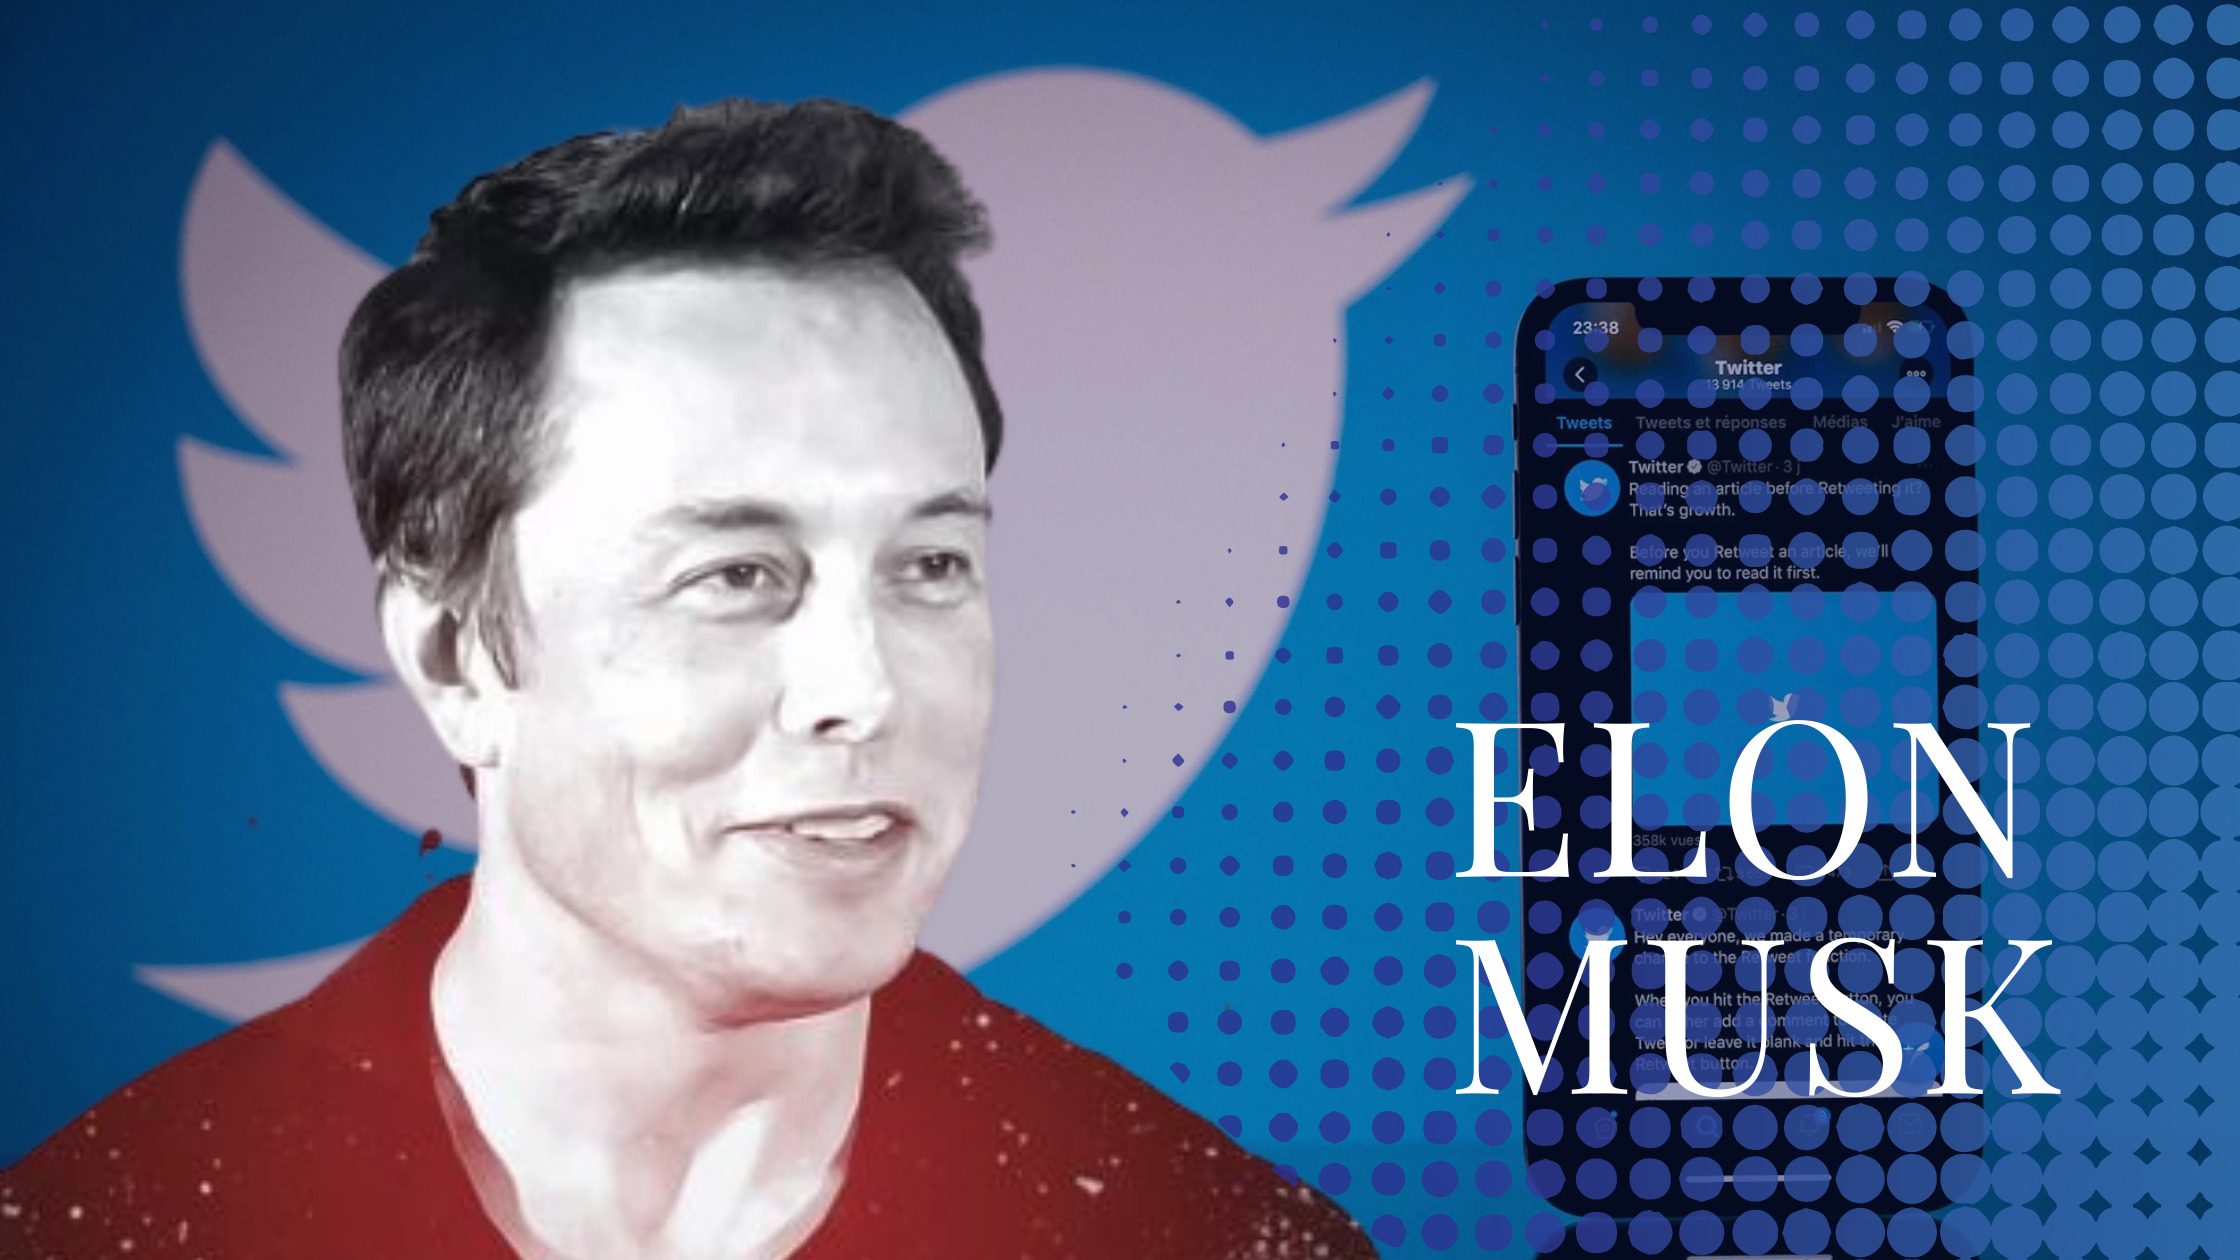 Elon Musk CEO of Twitter